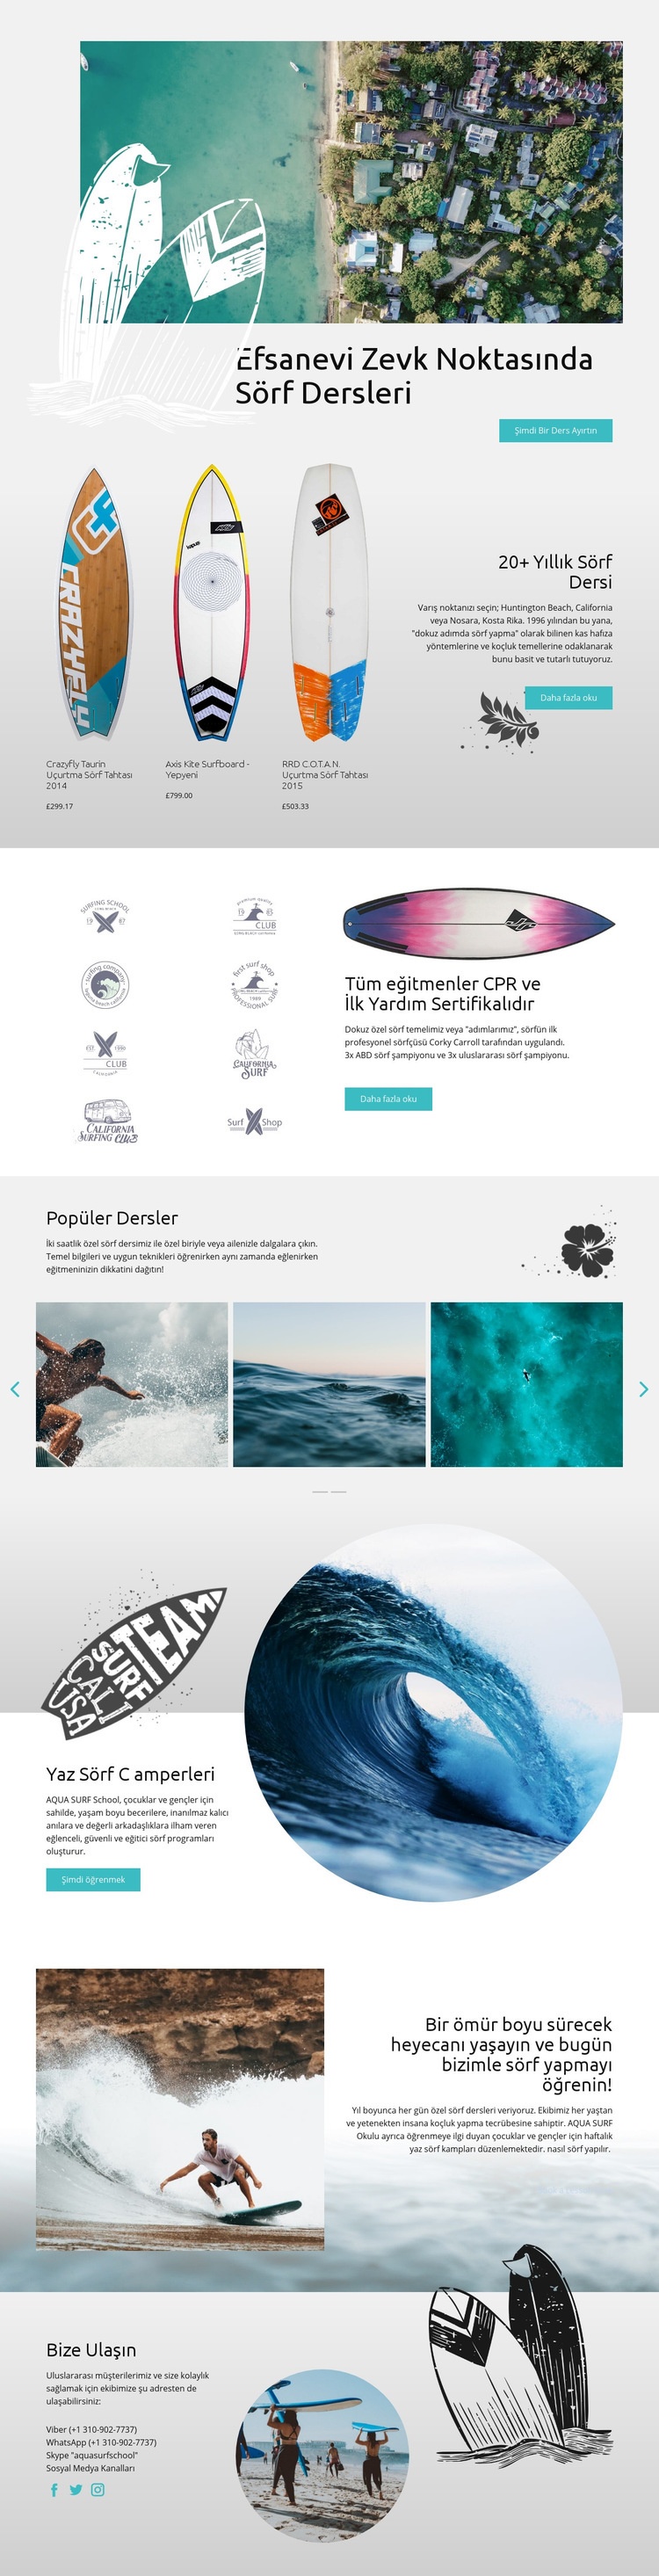 Sörf Dersleri Web sitesi tasarımı